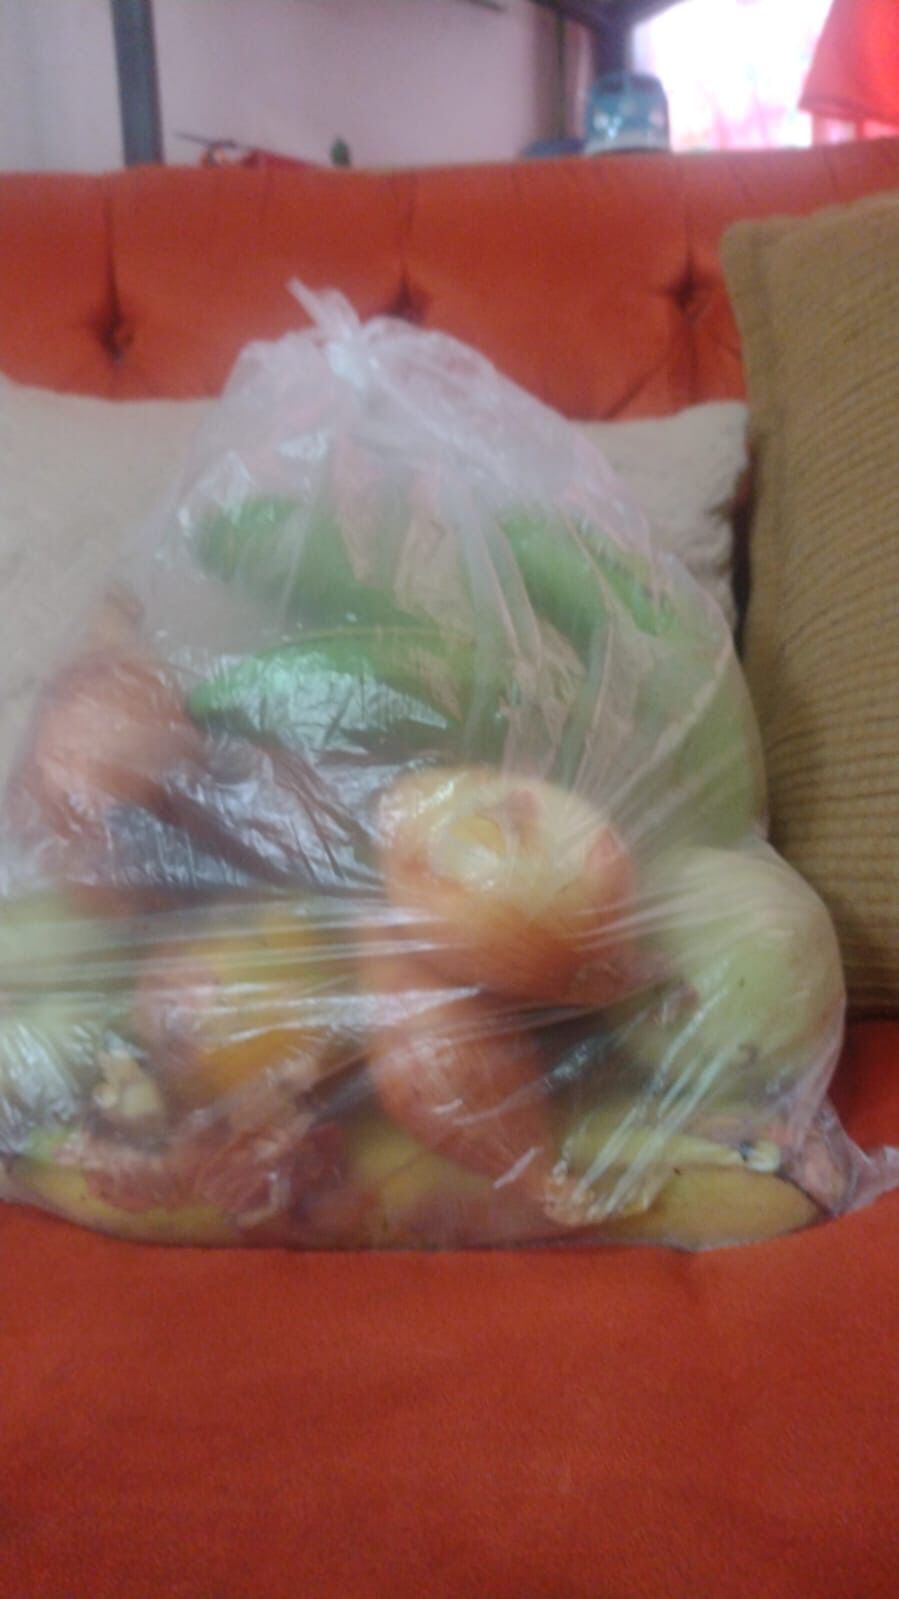 Este jueves 2 de mayo, más de un mes después de que a algunos estudiantes de la Escuela Los Guido se les entregara una bolsa con arroz y frijoles, entre otros alimentos; los niños recibieron solamente estas frutas y verduras. Foto: Cortesía